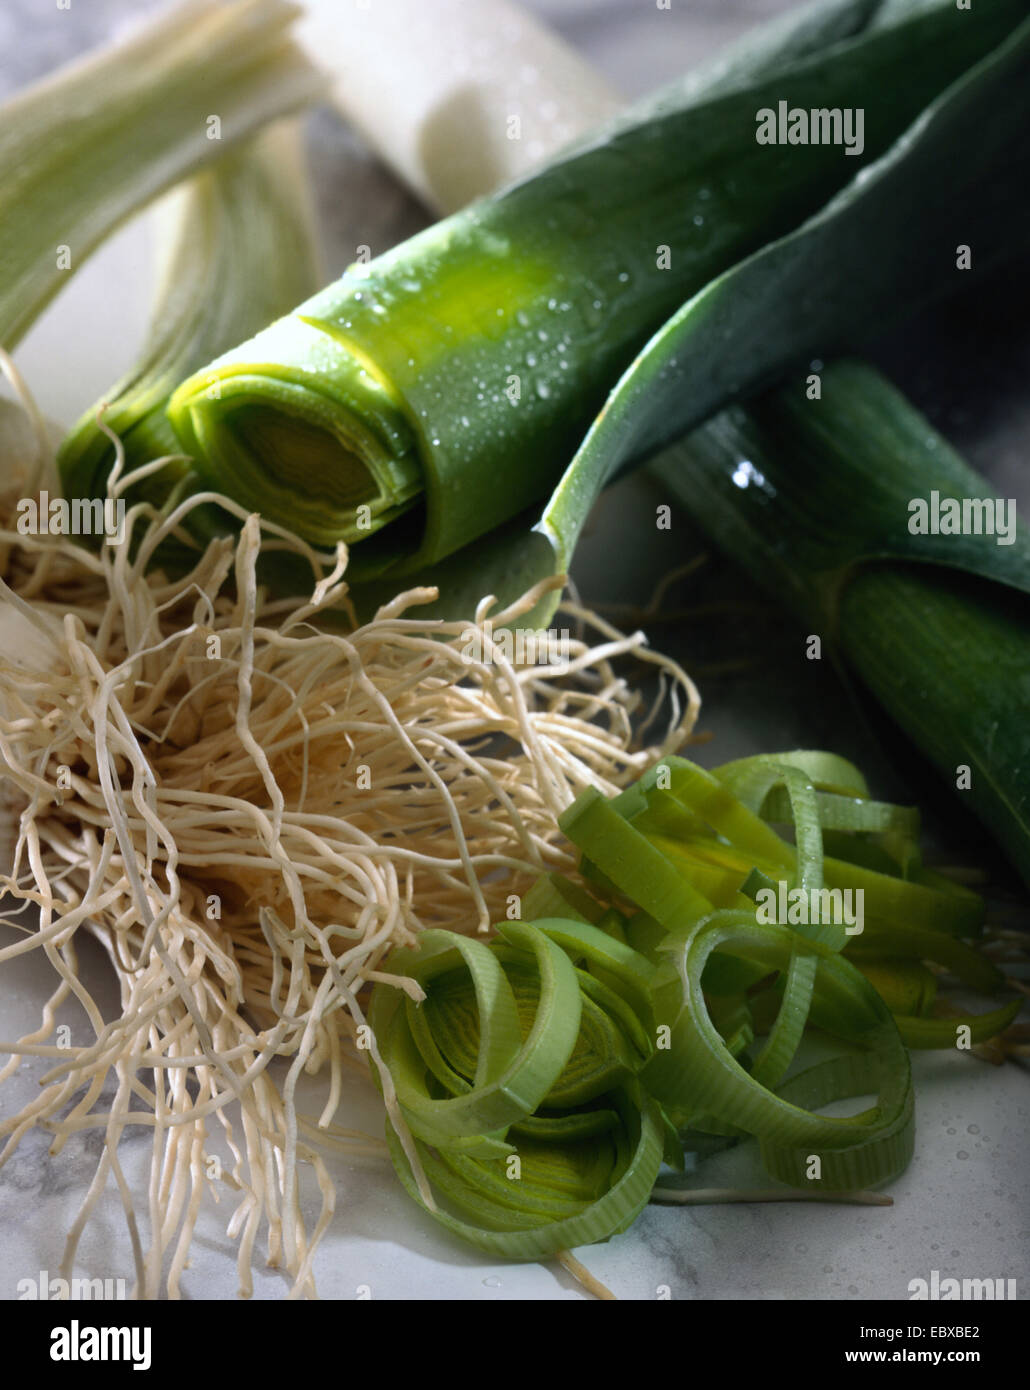 leek (Allium porrum), vegetable Stock Photo